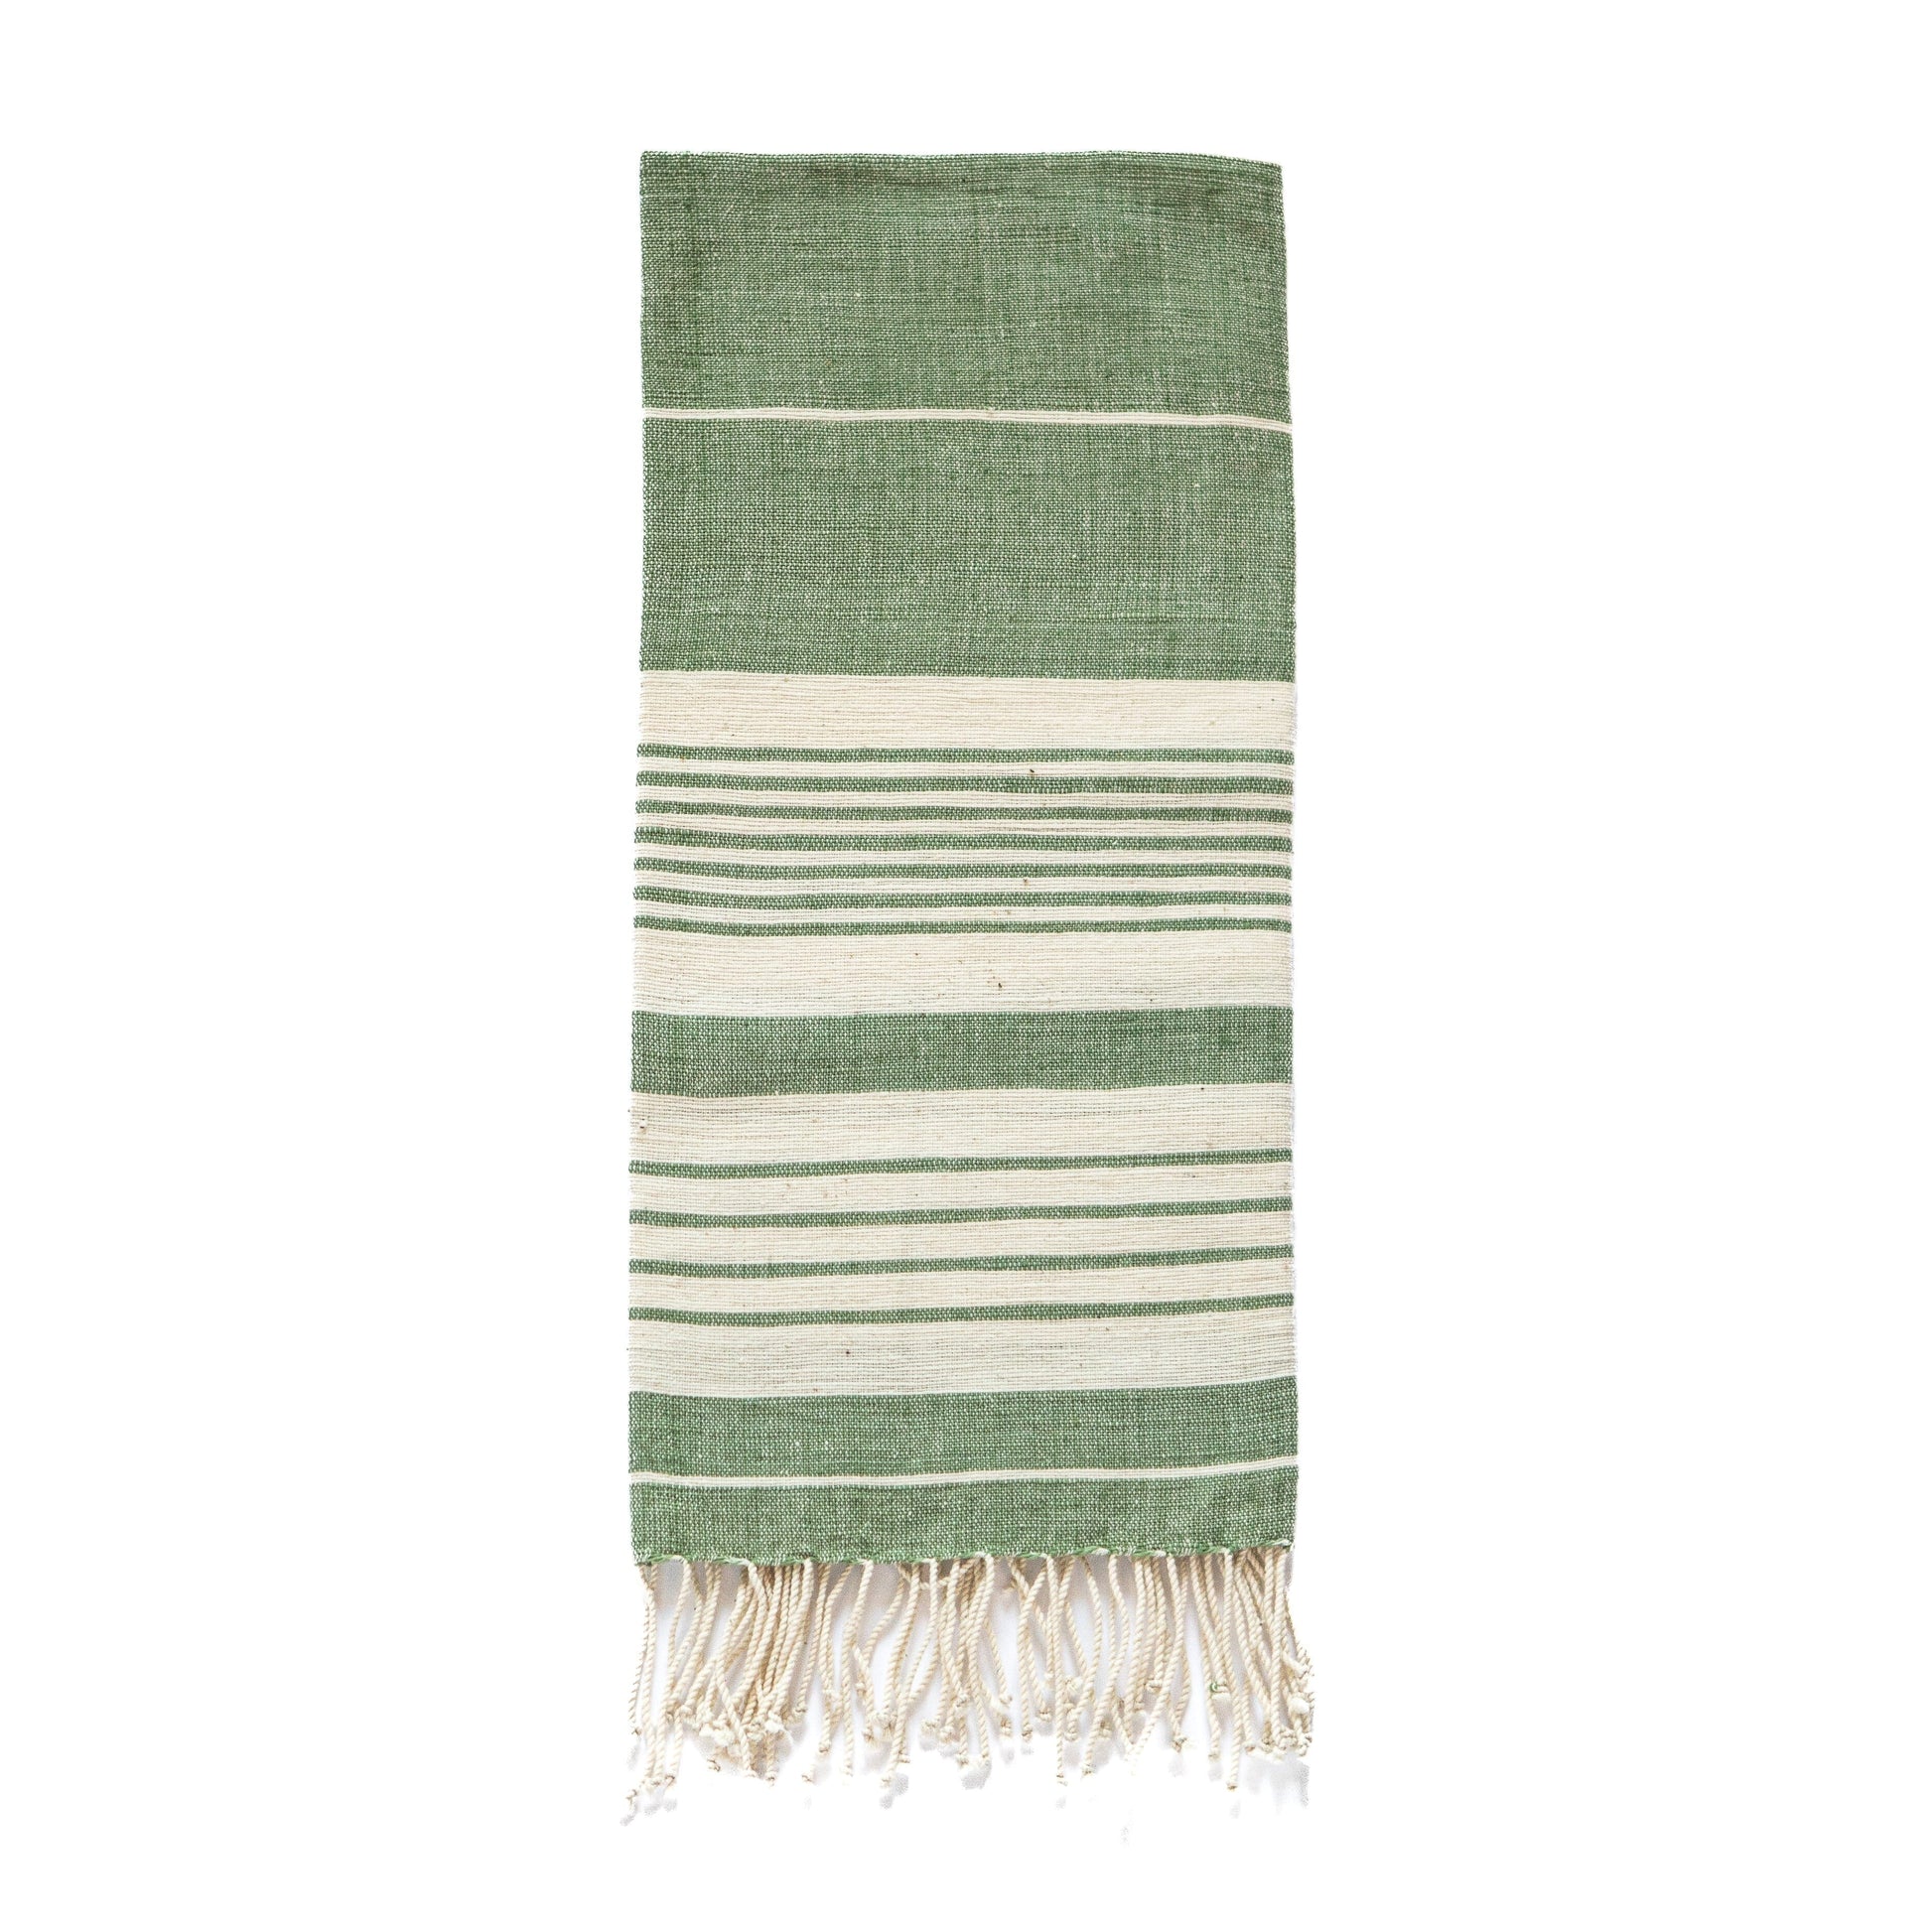 Dawa handwoven cotton towel towel sabahar Mint 